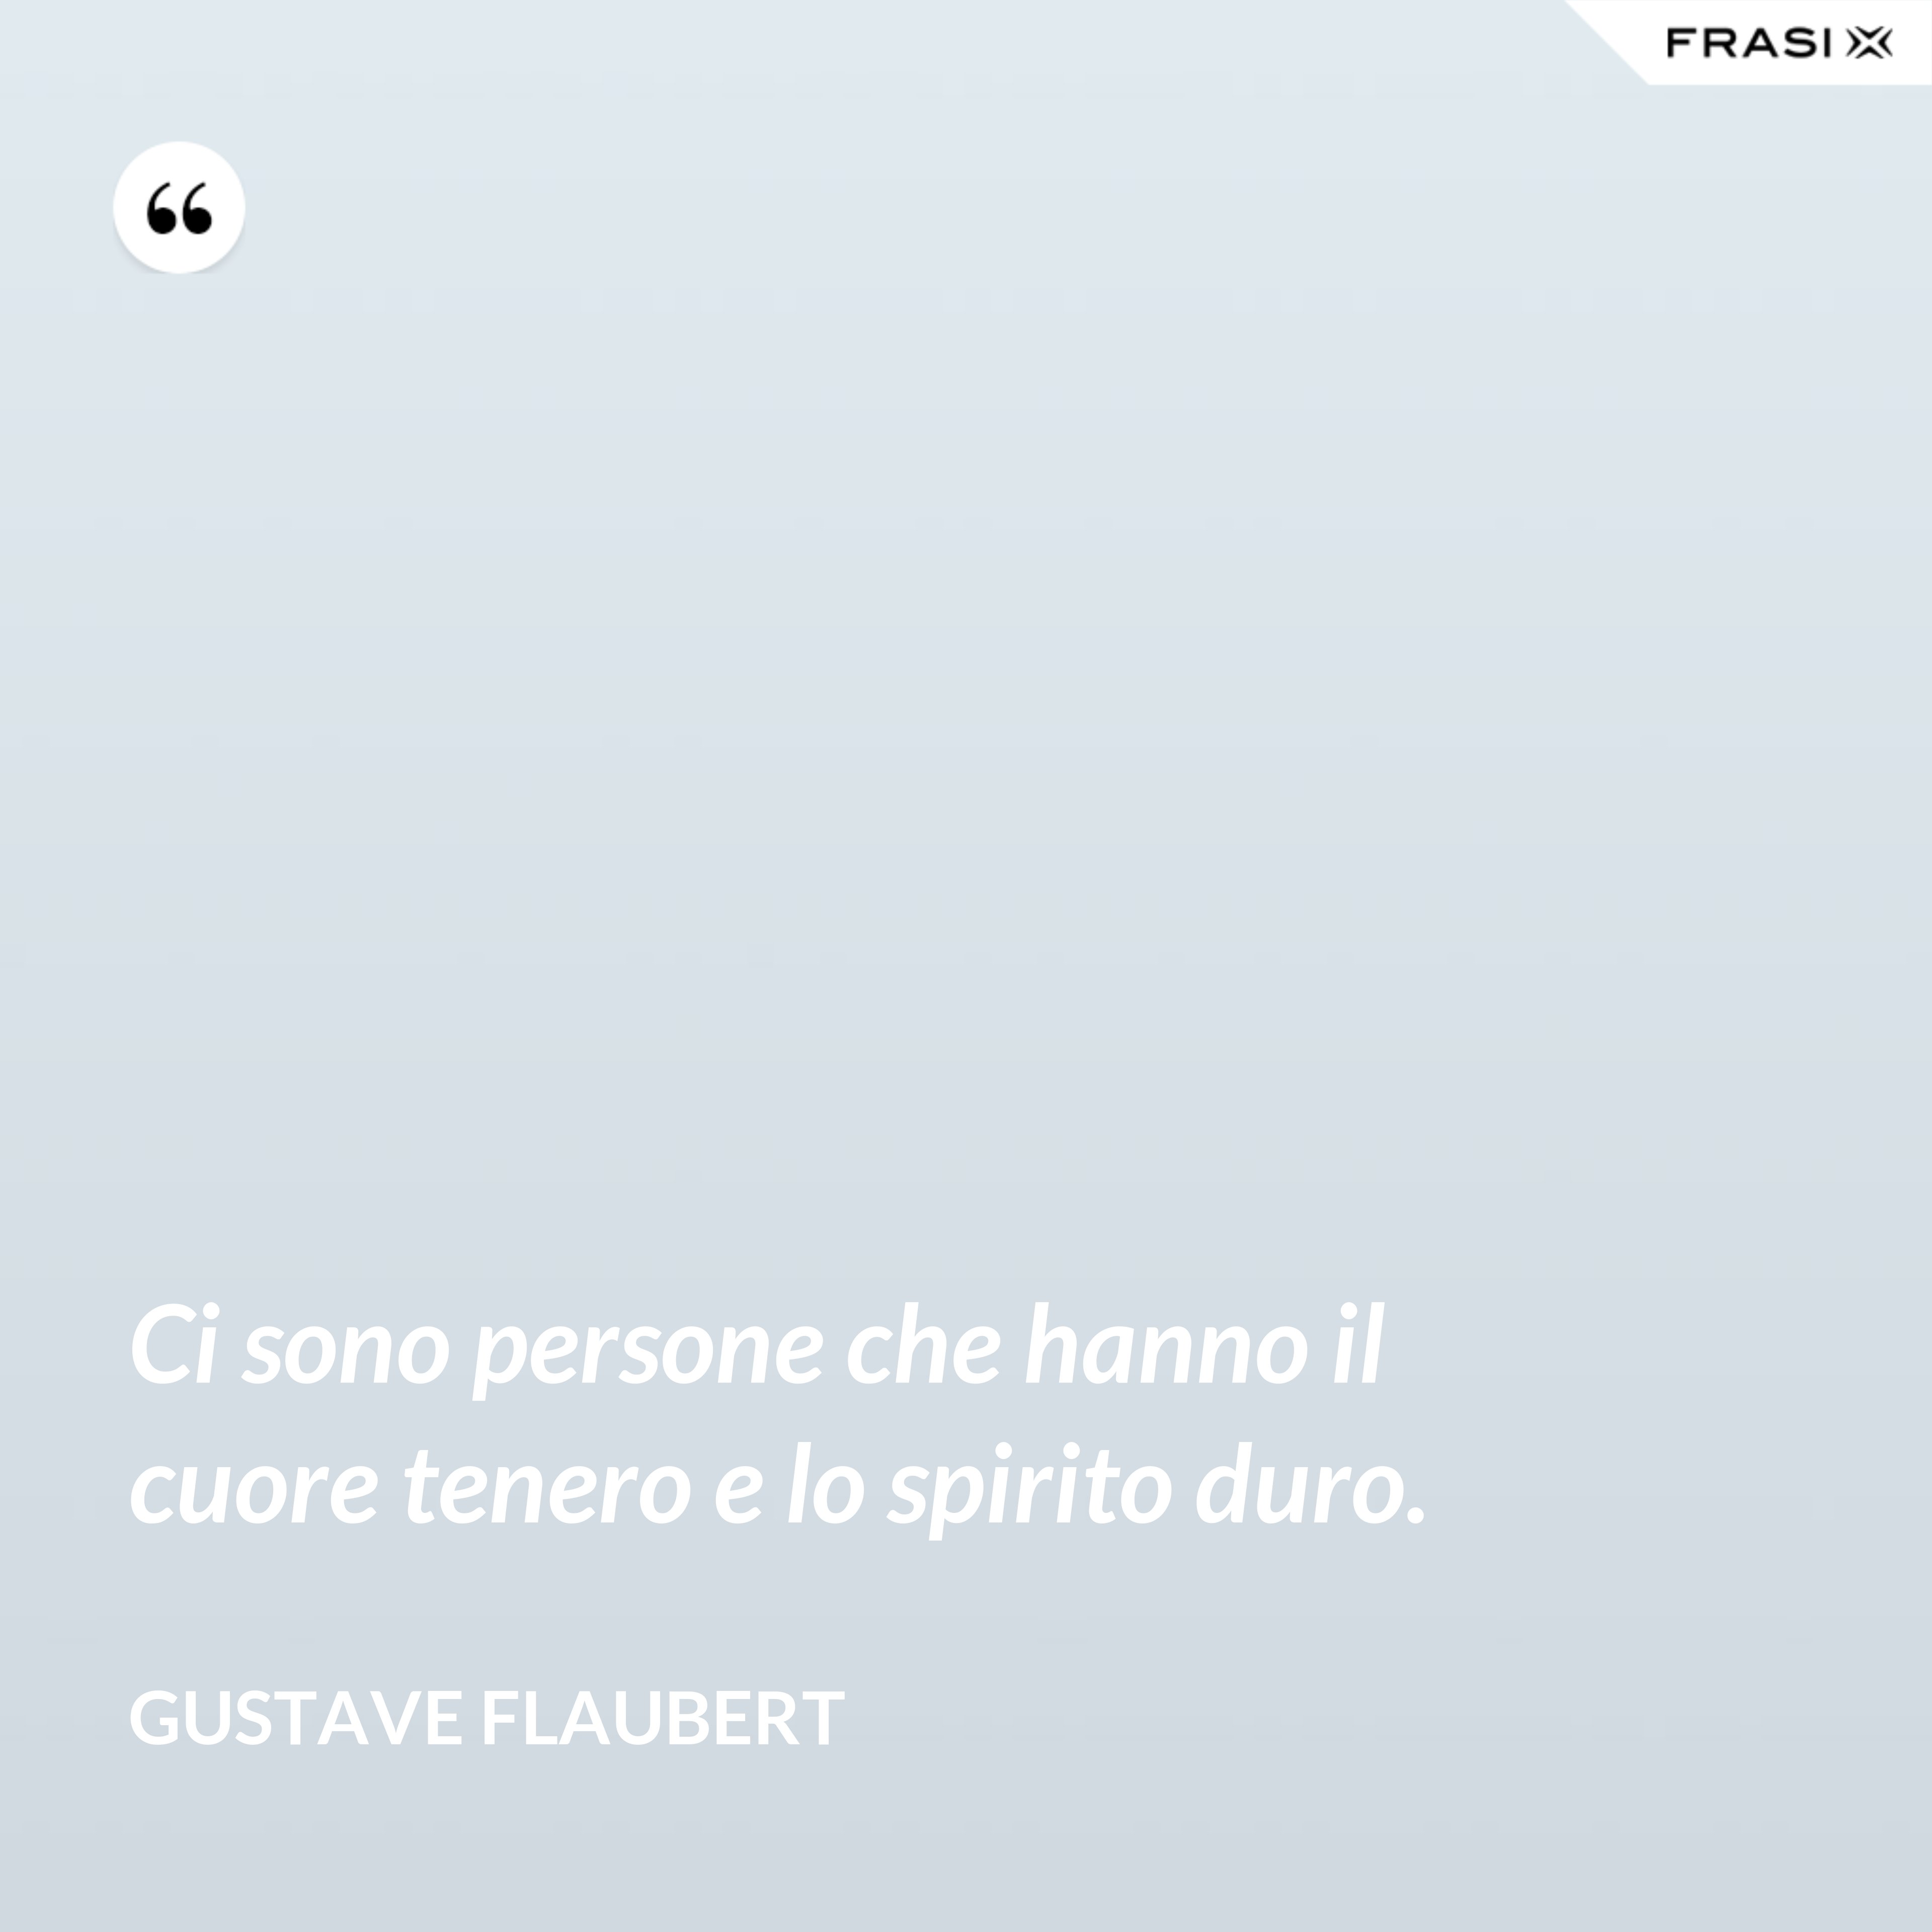 Ci sono persone che hanno il cuore tenero e lo spirito duro. - Gustave Flaubert